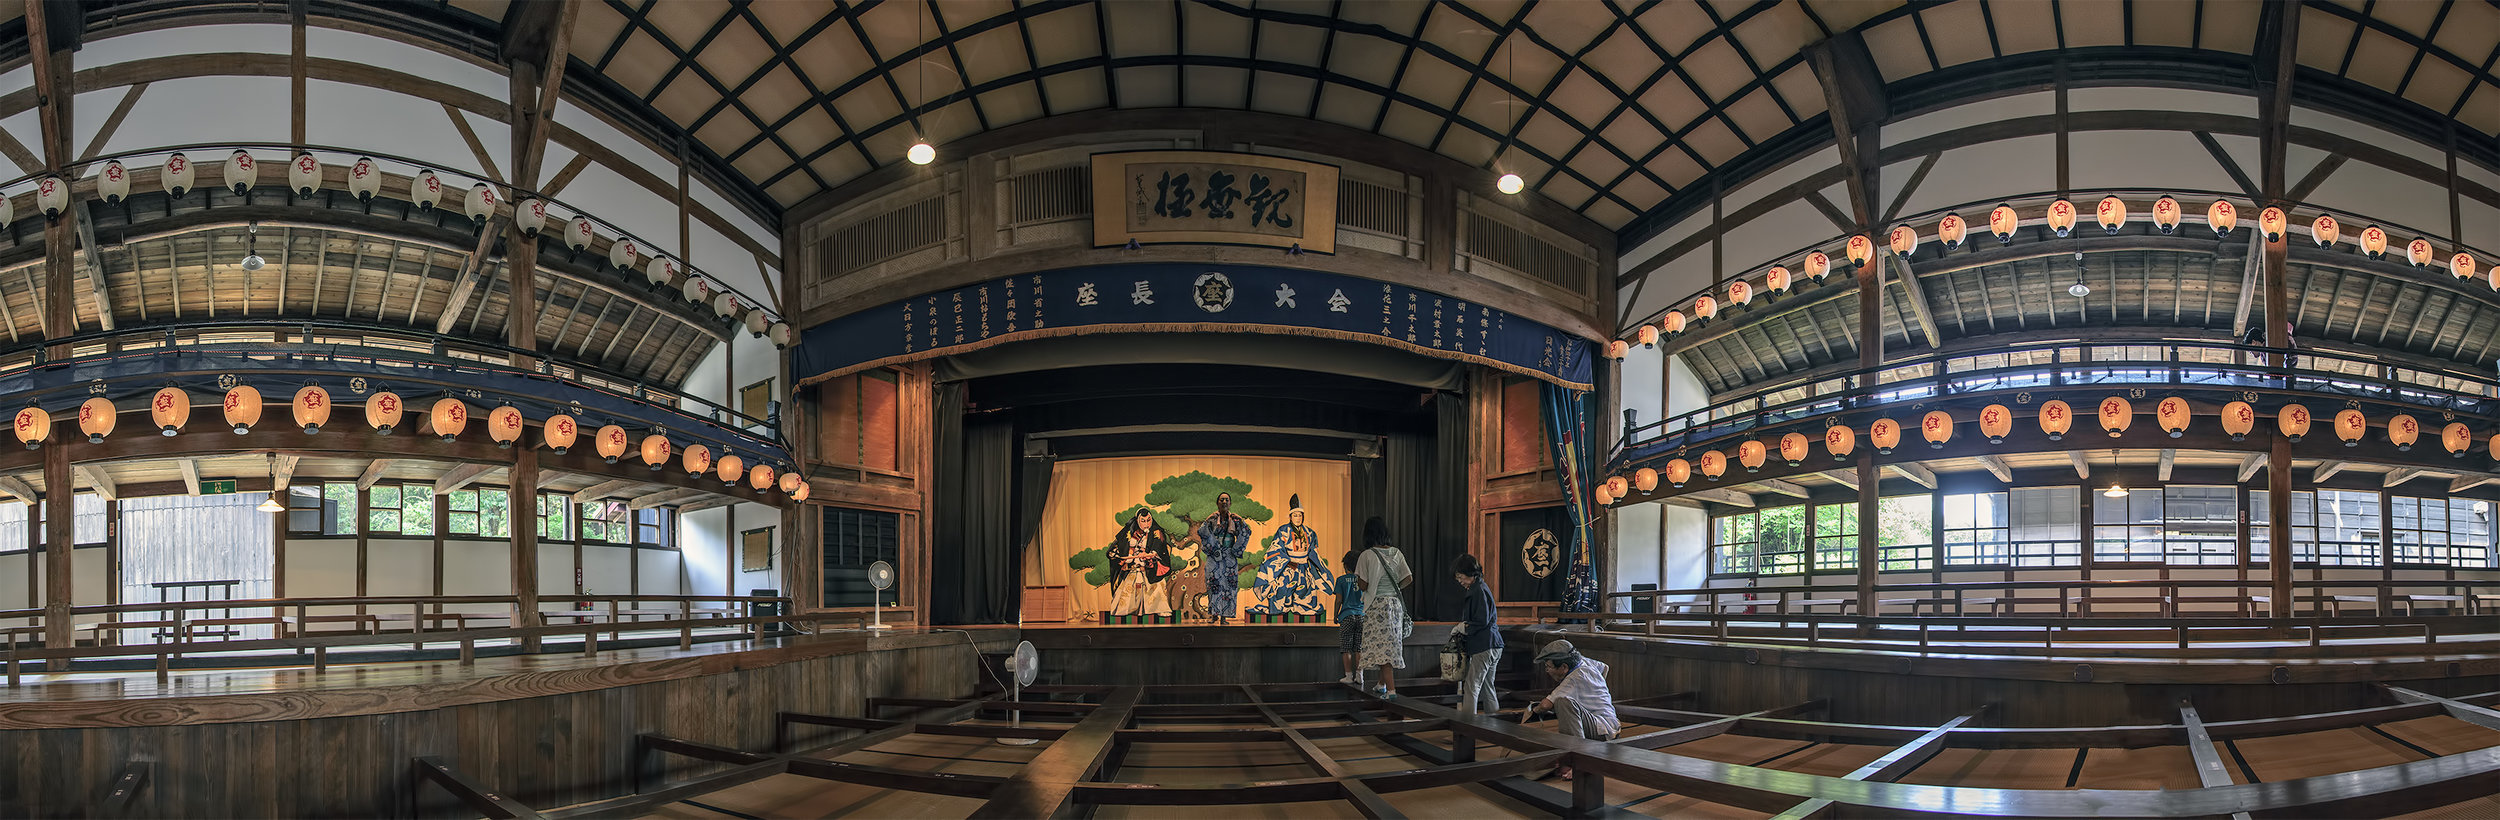 138_3900-RAW-photomerge-panorama-Kabuki-Theater-Kurehaza-呉服座-Meiji-Mura-明治村.jpg